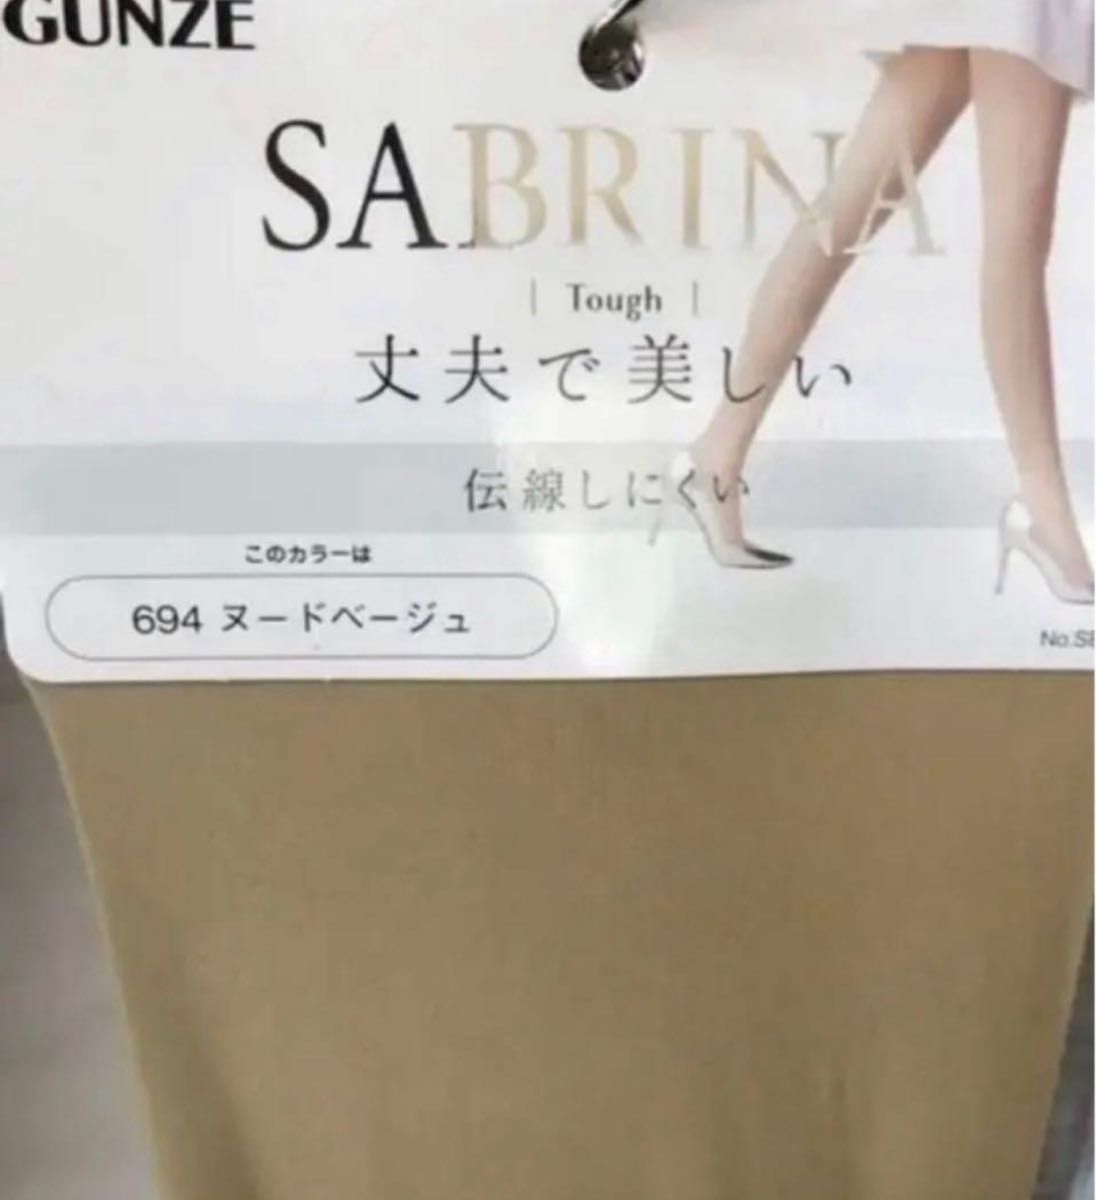 サブリナ アクティフィット 日本製 人気カラー2色 L〜LL 4足セット  